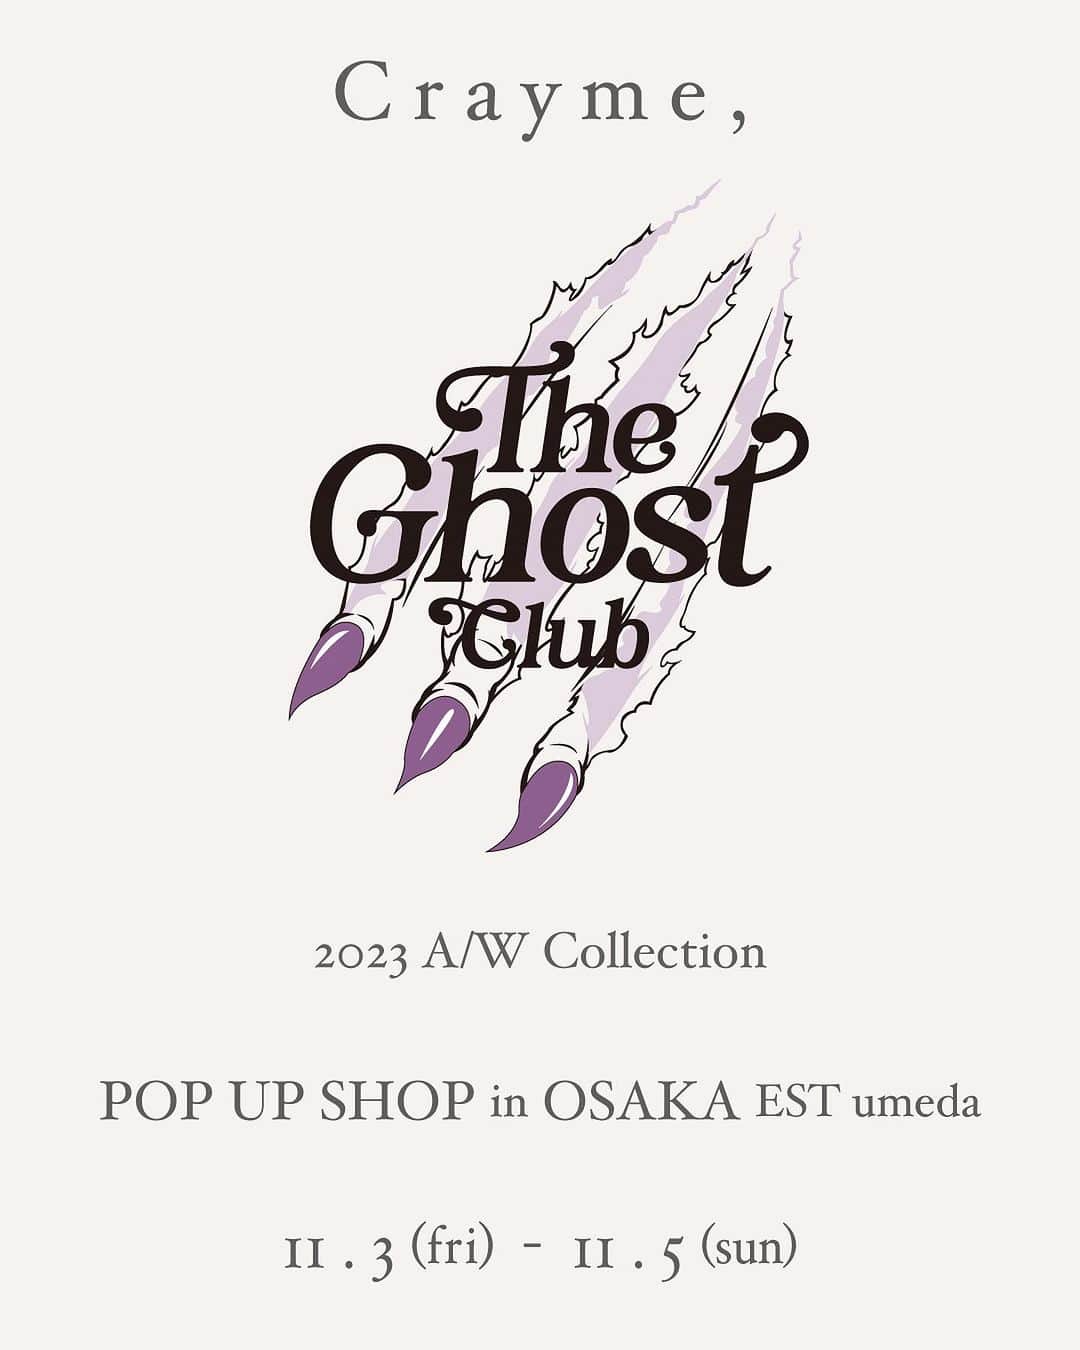 菅野結以のインスタグラム：「Crayme, @crayme_official  New Collection  ＂The Ghost Club＂ 今季のPOP UPは大阪からSTART🖤 ⁡ 来る日も来る日も注ぎ育ててきました いちはやく見て着て触れにきてね 来店イベントも🫶🏻♡ ⁡ ⁡ ⁡ 【 NEWS 】 ⁡ 11.3(fri)～11.5(sun) 大阪・梅田エスト1F @est_umeda Crayme, 2023A/W collection ＂The Ghost Club＂ ⁡ POP UP SHOP in OSAKA OPEN！ ⁡ 11/3(金)・11/4(土)・11/5(日)の3日間、 Crayme,Limited shopがOPENいたします。 ⁡ 2023 A/W collection の新作アイテムを いち早くお手に取り、ご試着いただける機会となります。 ⁡ 期間中は日替わり直筆サイン入り ポストカードプレゼントのほか、 最終日5日にはdirector菅野結以の 来店イベントも開催いたします。 ⁡ ⁡ ■大阪　梅田エスト @est_umeda  West Area W24 〒530-0017 大阪市北区角田町3番25号 https://www.est-sc.com/ ⁡ ■直筆サイン入りポストカードプレゼント 税込み￥10,000以上ご購入のお客様、 各日先着30名様へプレゼント。 ※各日デザインは異なります。 ⁡ ■11月5日(日)菅野結以 来店イベント ２ショットチェキ＆握手会 ⁡ 11月3日～5日の期間に、 店頭にて税込み￥25,000以上ご購入のお客様、 先着100名様をイベントへご招待。 ⁡ イベント時間 11/5(日) ①15:00～16:00 ②17:00～18:00 ⁡ 皆さまに安心してイベントをお楽しみいただけますよう、 感染対策もしてまいります。 その他、当日の状況により、お客様・出演者・スタッフの安全確保のため、制約やご協力をお願いする場合もございます。 予めご了承のほど、お願い申し上げます。 ⁡ 皆さまのご来店を心よりお待ちしております。 ⁡ #crayme #theghostclub #2023aw #popupshop #limitedshop #osaka #umeda #umedaest #event」